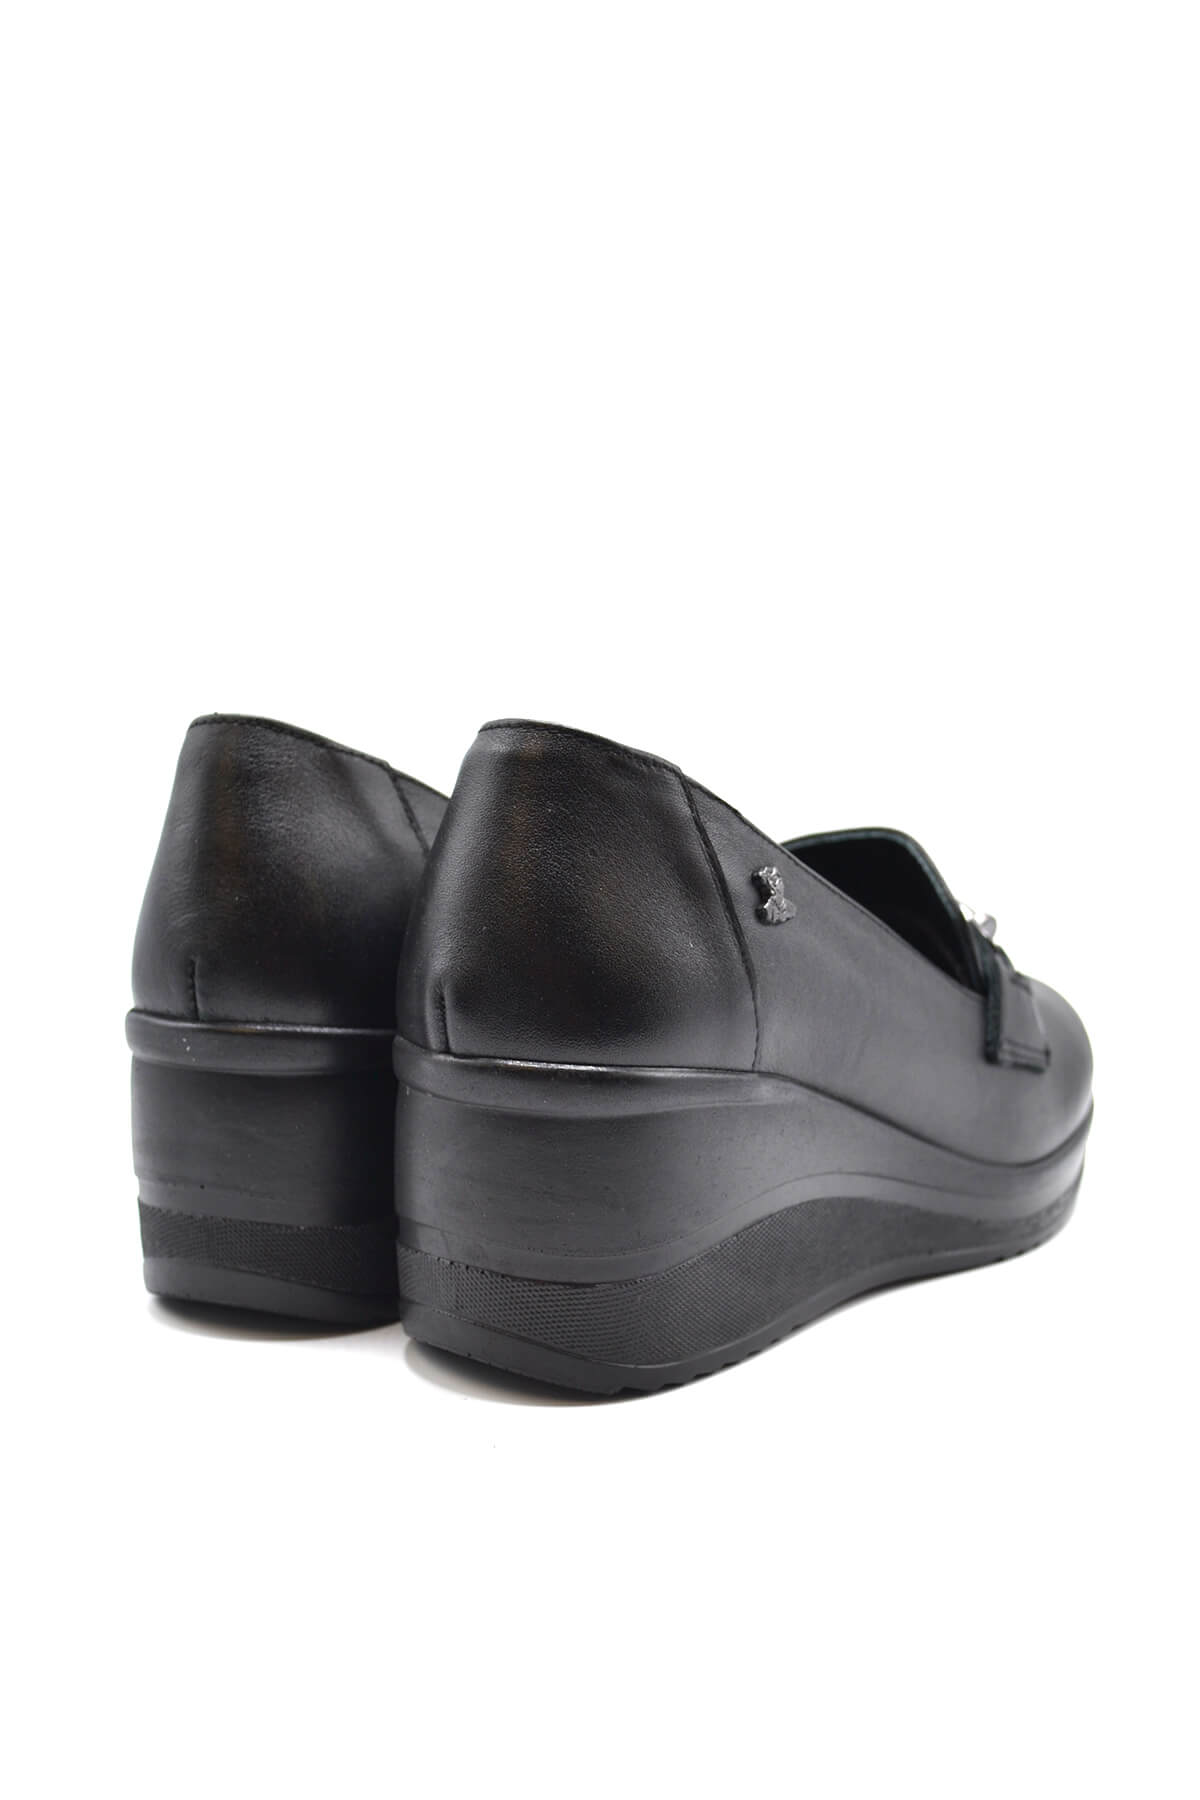 Kadın Dolgu Topuk Deri Ayakkabı Siyah 2111514K - Thumbnail